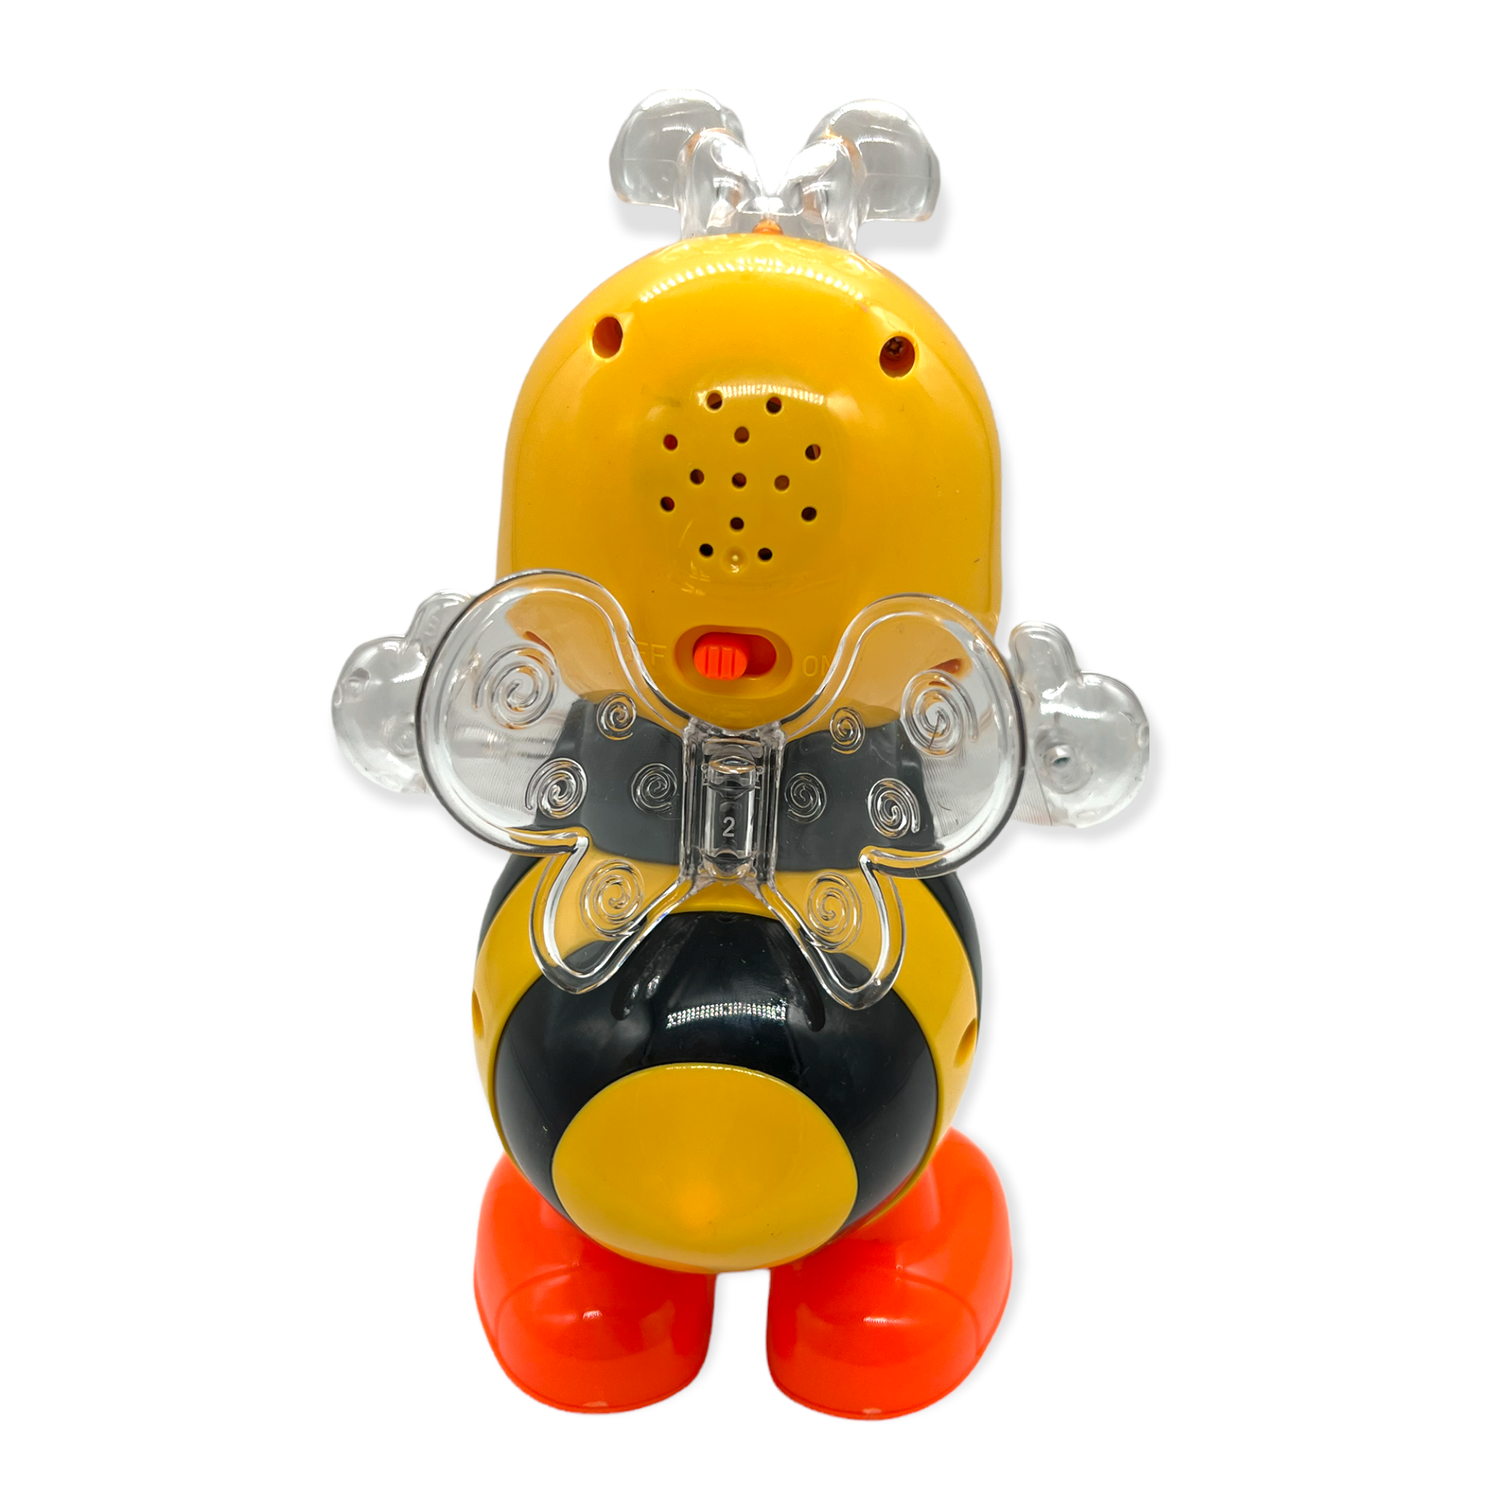 Интерактивная игрушка Пчелка Panawealth International со световыми и музыкальными эффектами - фото 3